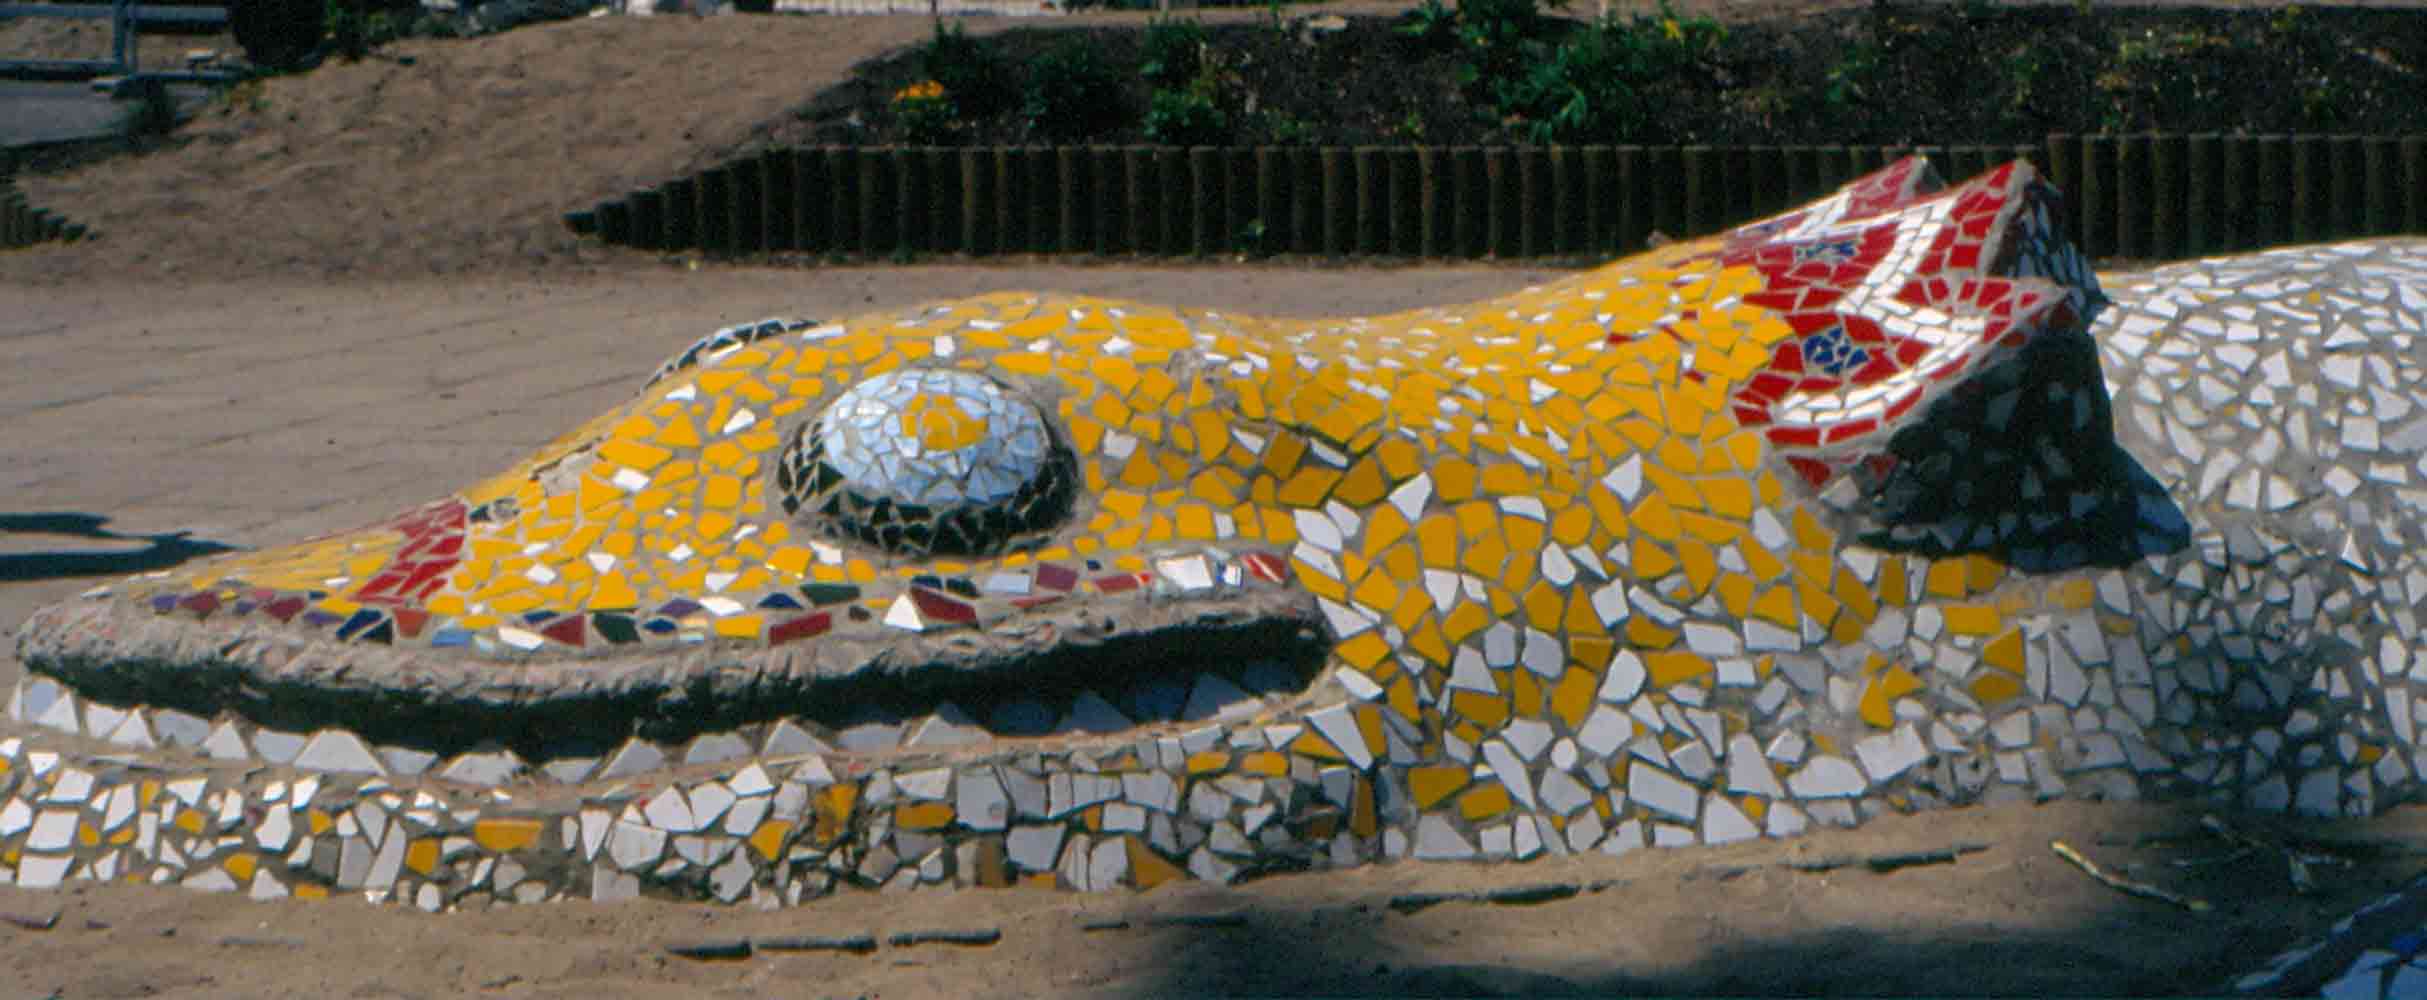 Mosaikskulptur Fabeltier